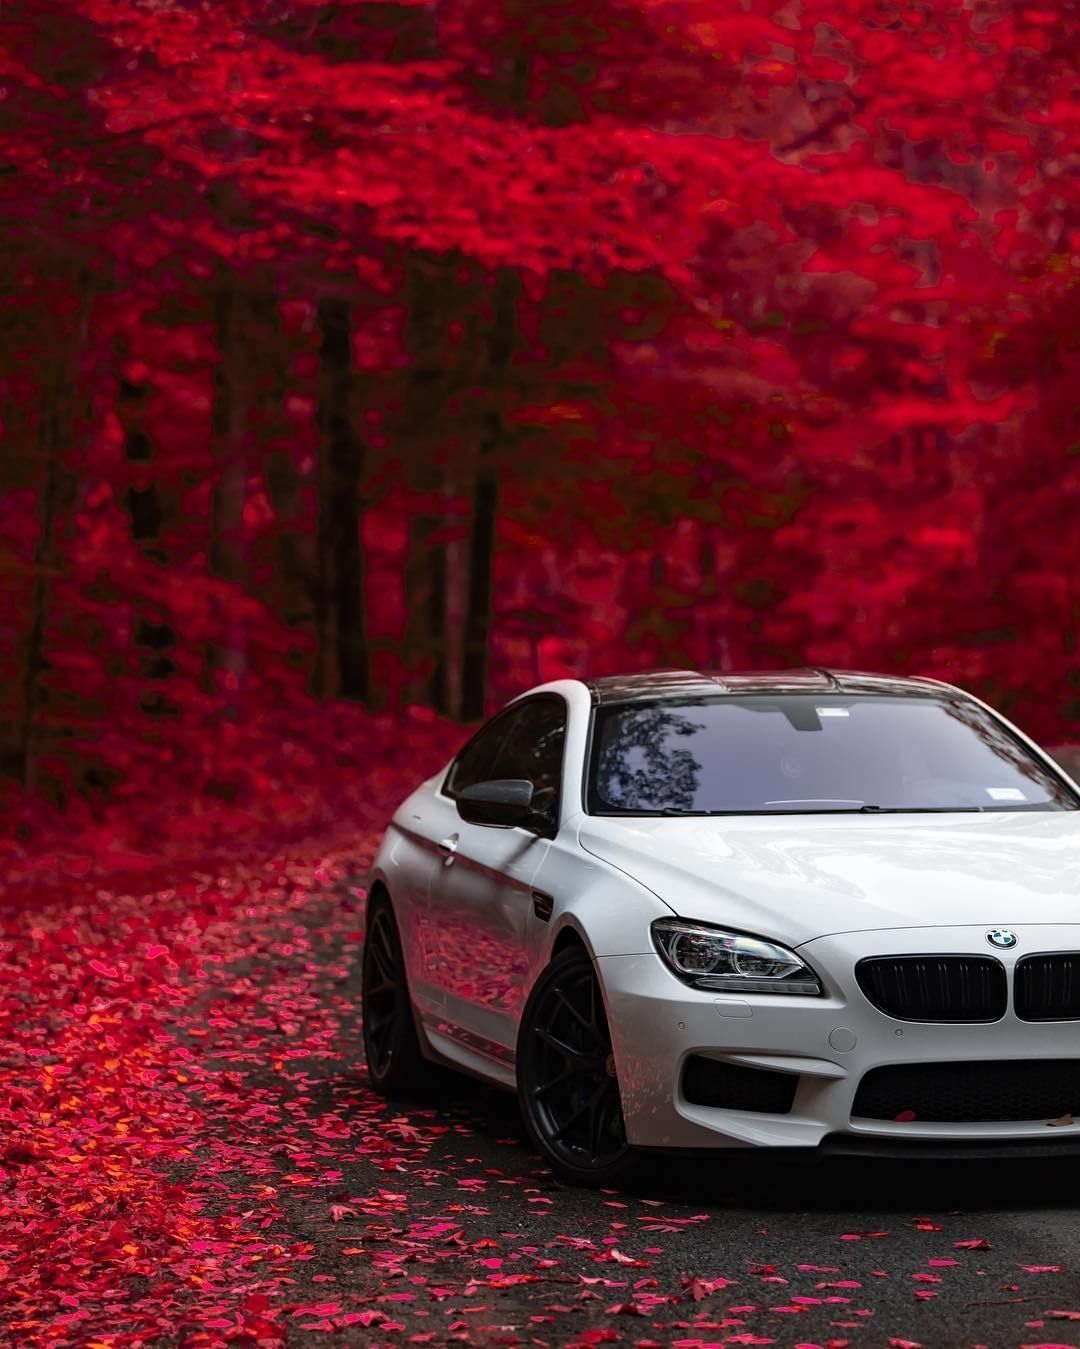 Autumn offers so many opportunities to amaze. The BMW M6 Coupé. #BMW #M6 #BMWM #BMWMrepost. Bmw m Bmw m6 coupe, Bmw cars